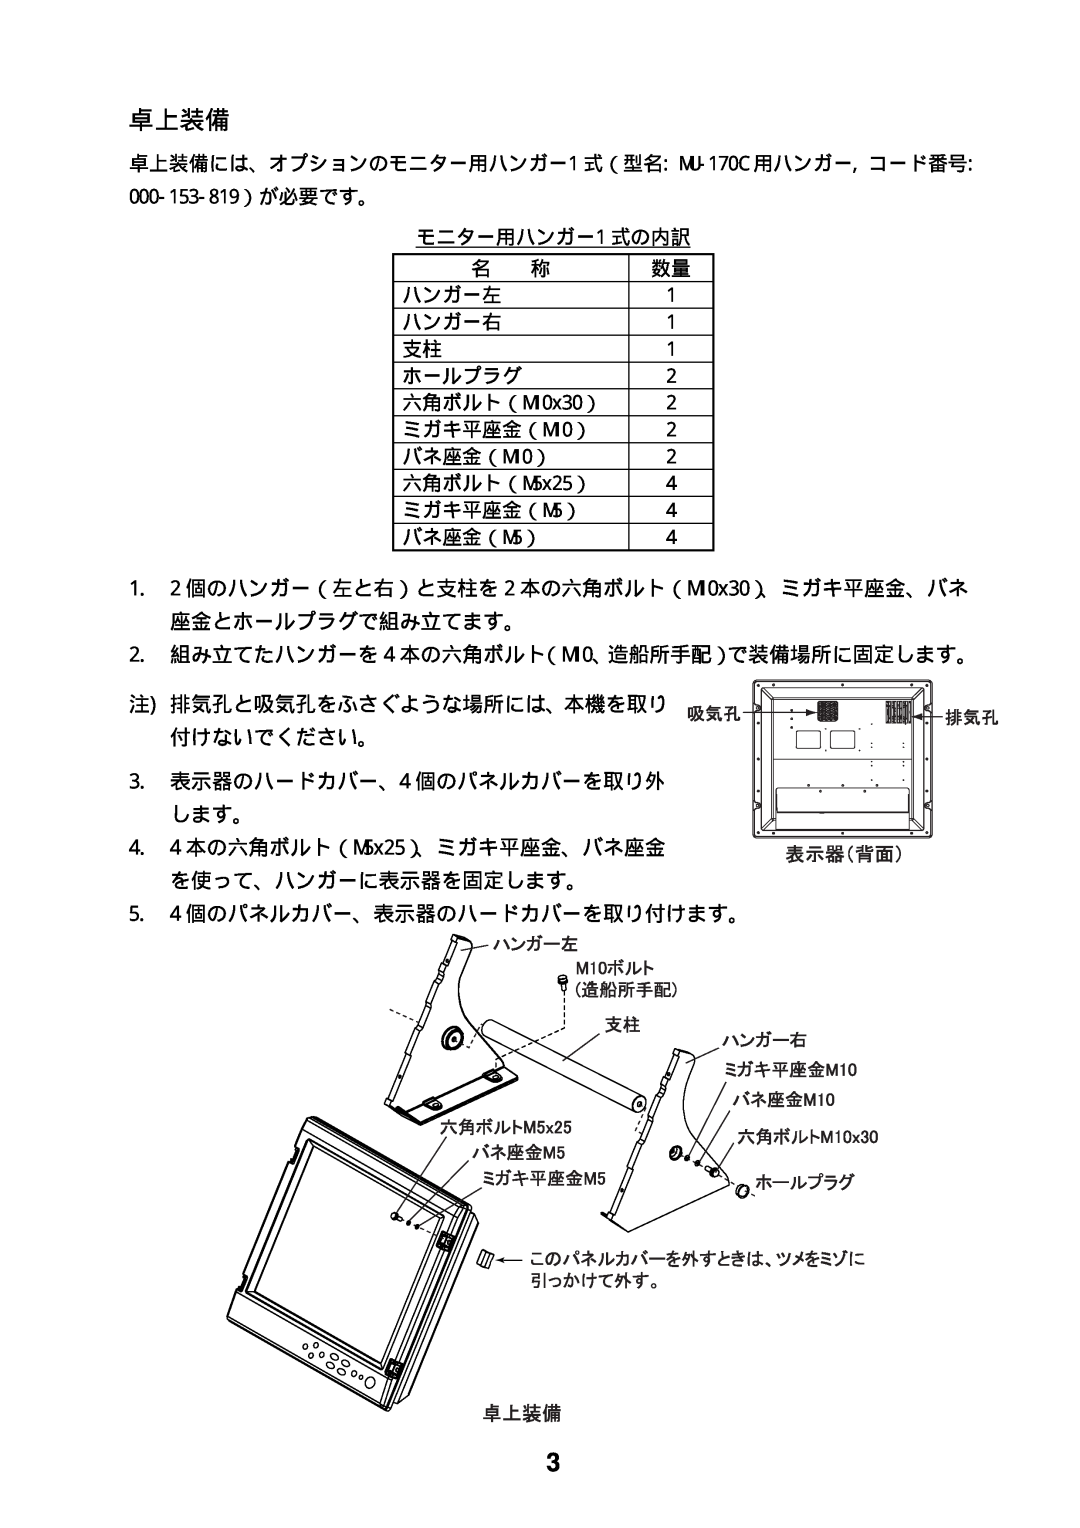 Furuno MU-170C manual 卓上装備, 000-153-819）が必要です。 